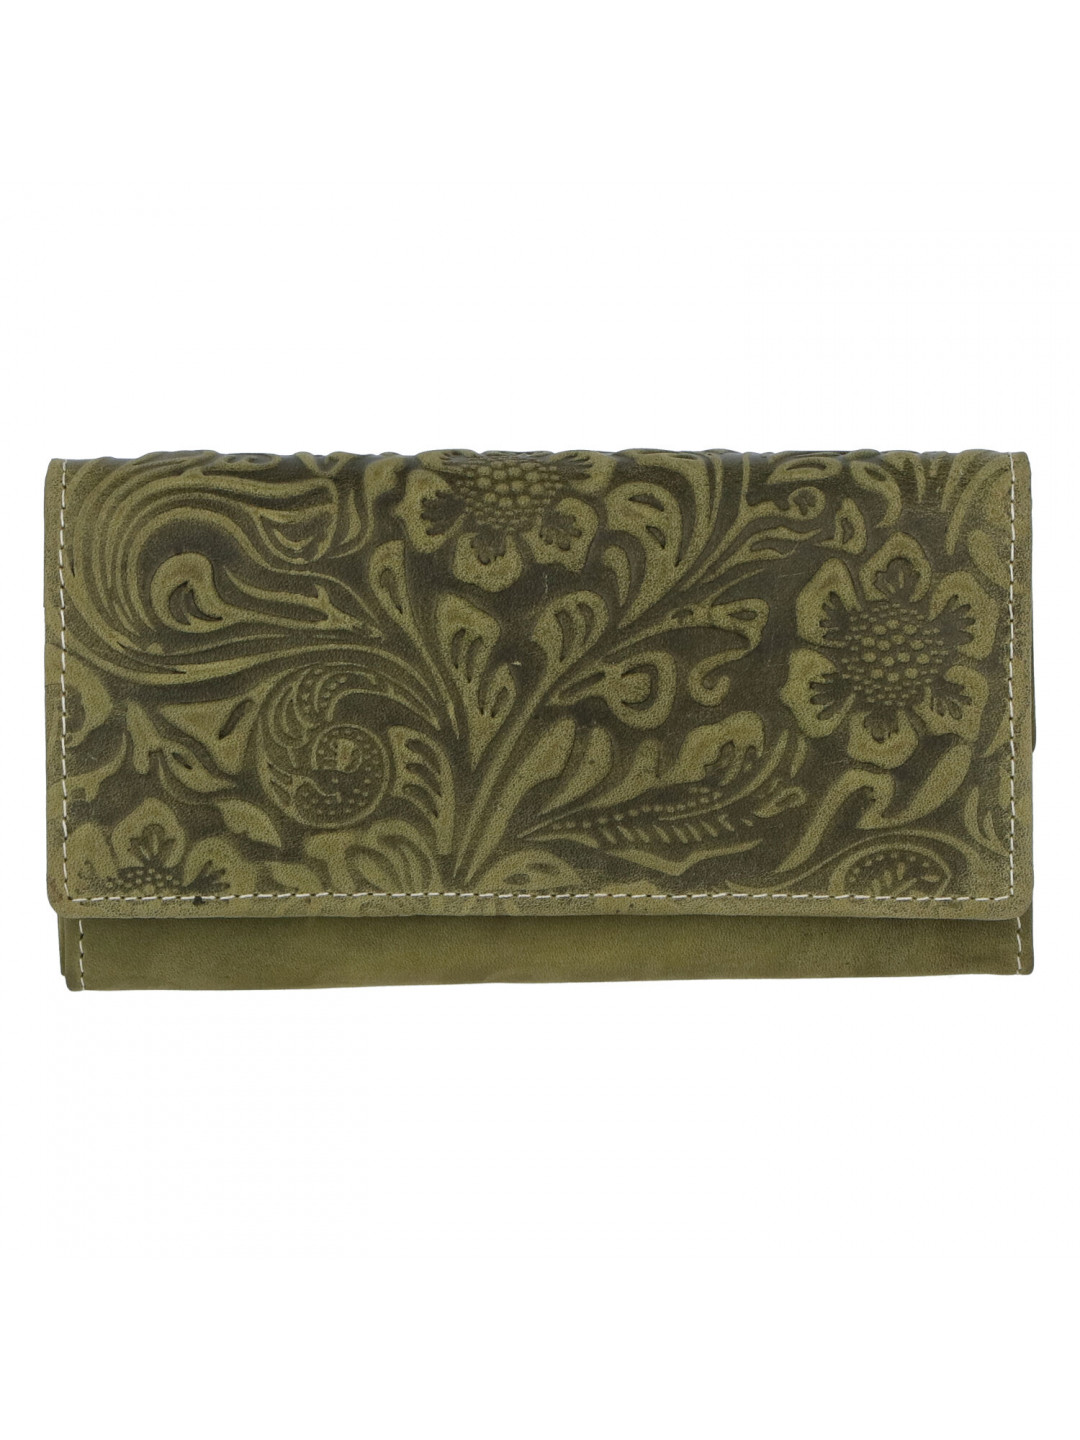 Dámská kožená peněženka zelená se vzorem – Tomas Kalasia